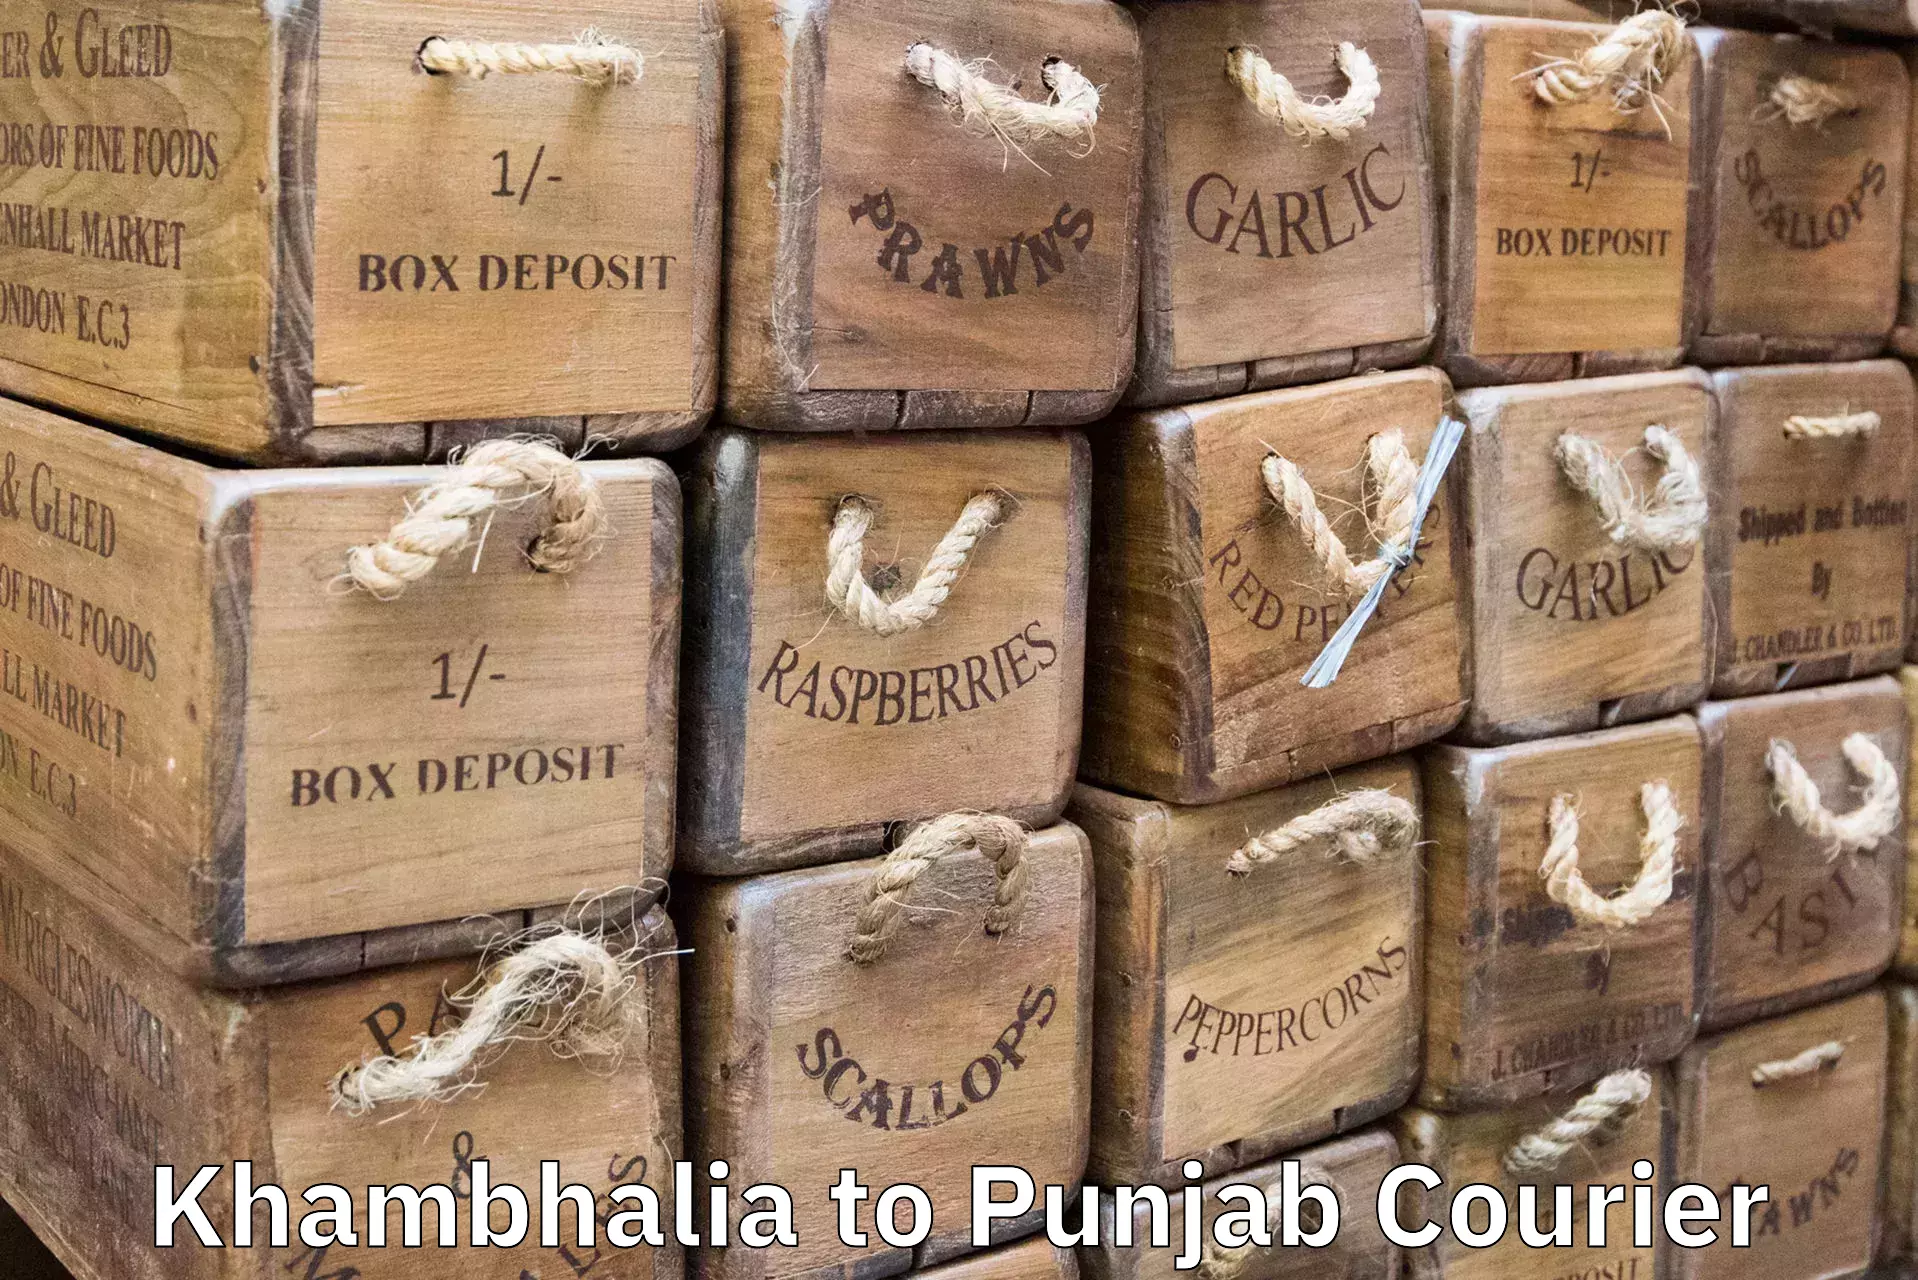 Luggage shipment specialists Khambhalia to Punjab